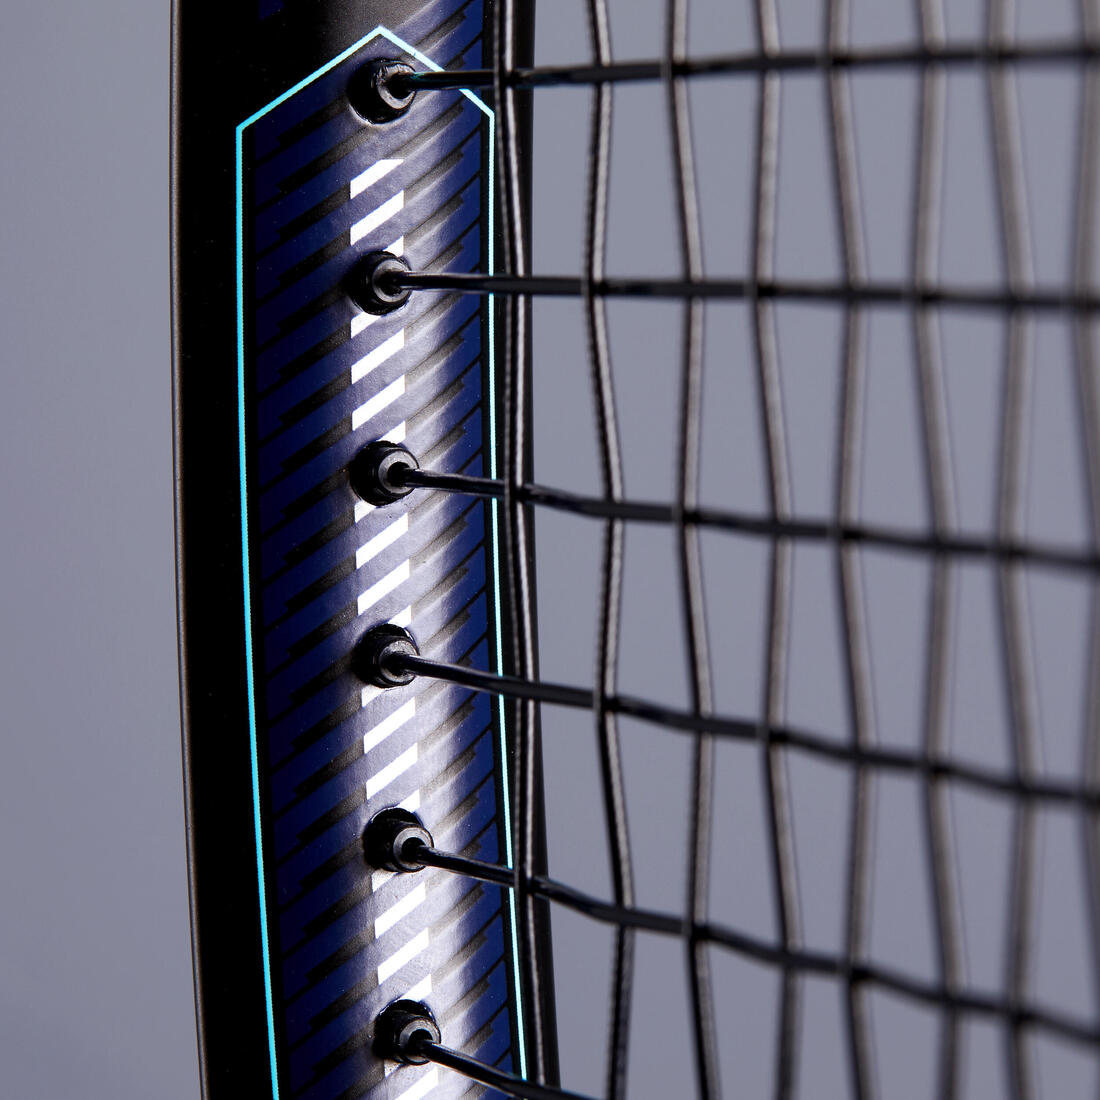 ARTENGO (アルテンゴ) テニス ラケットTR500 LITE